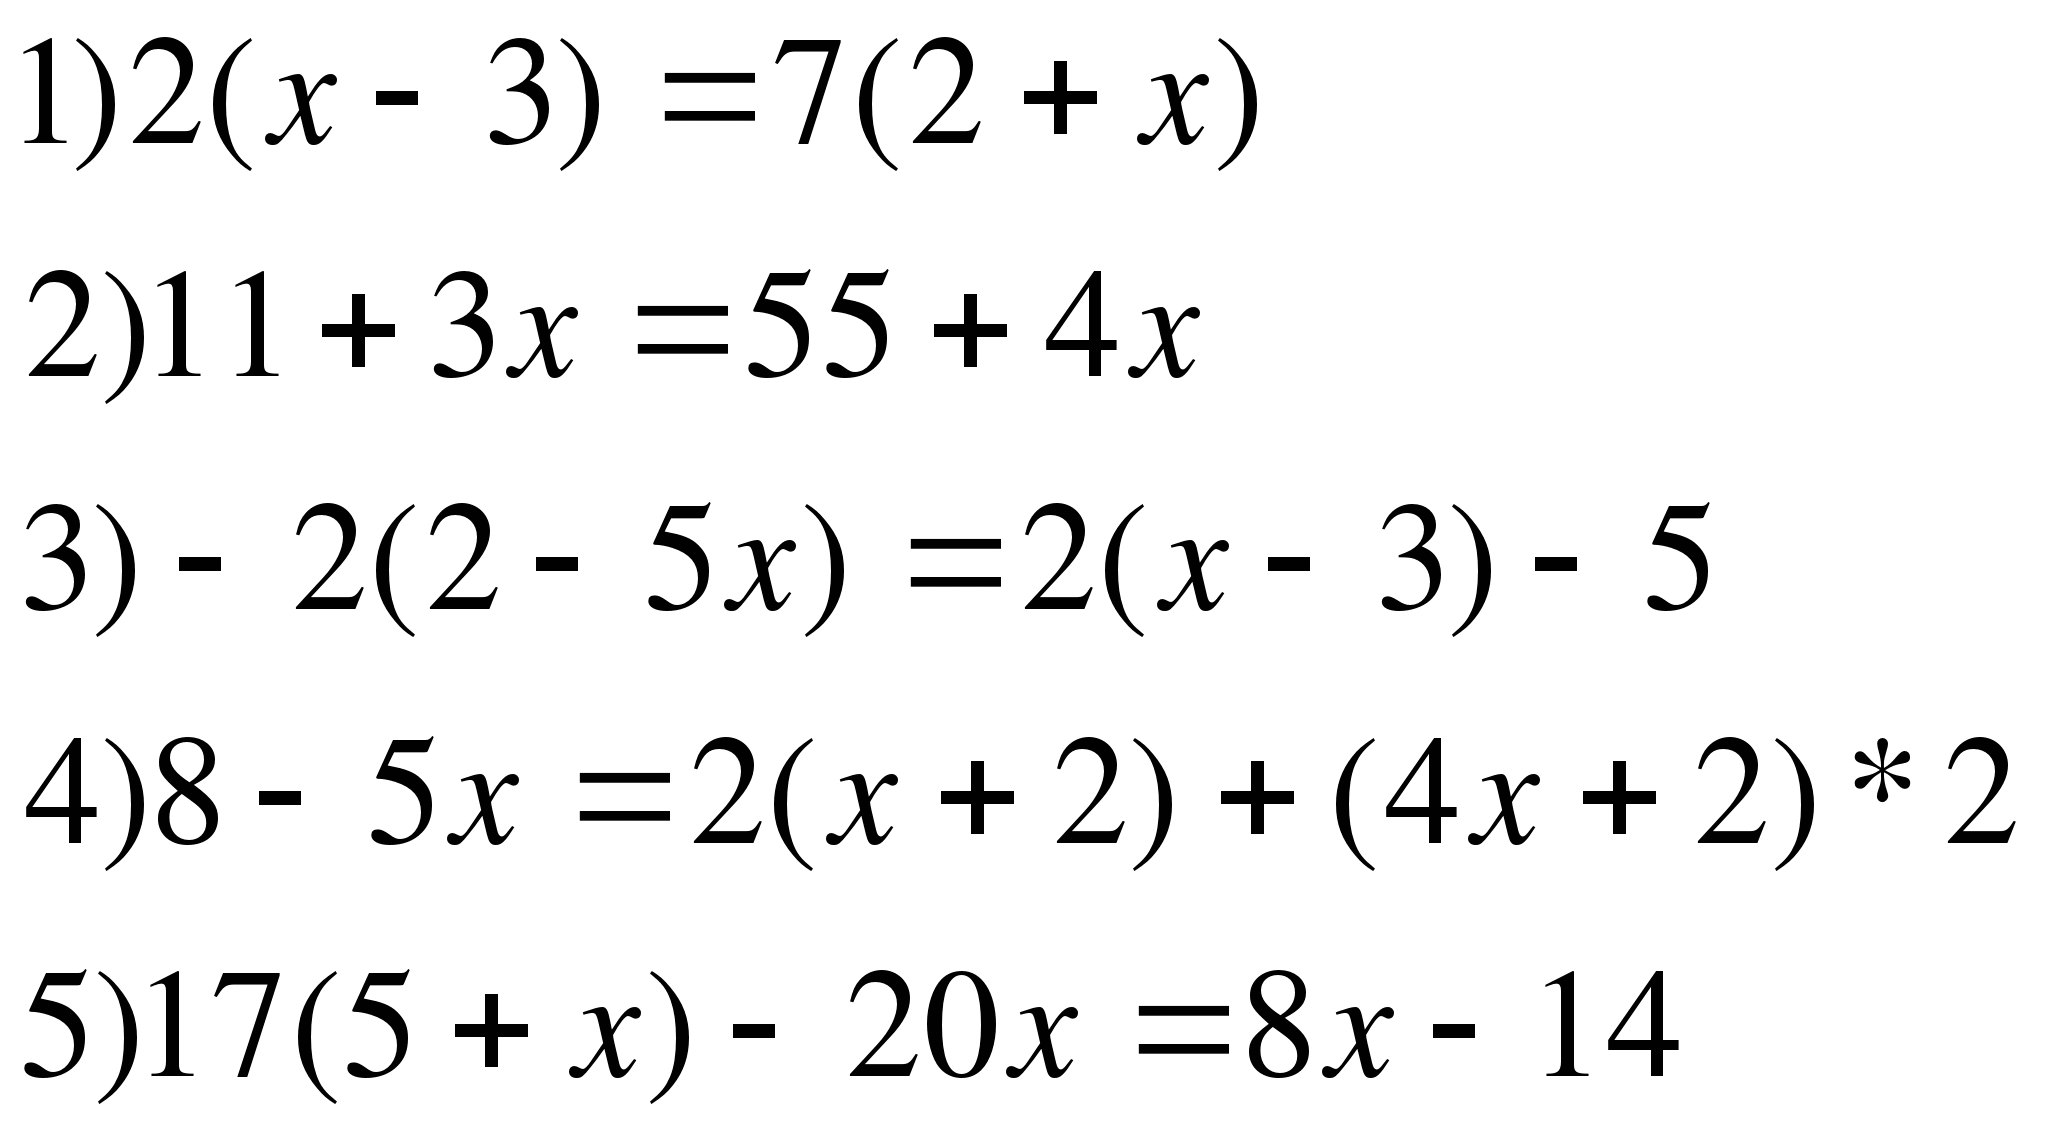 Решение уравнений 6 класс математика. Уравнения 6 класс по математике. Решить уравнение 6 класс. Уравнения 6 класс по математике со скобками.